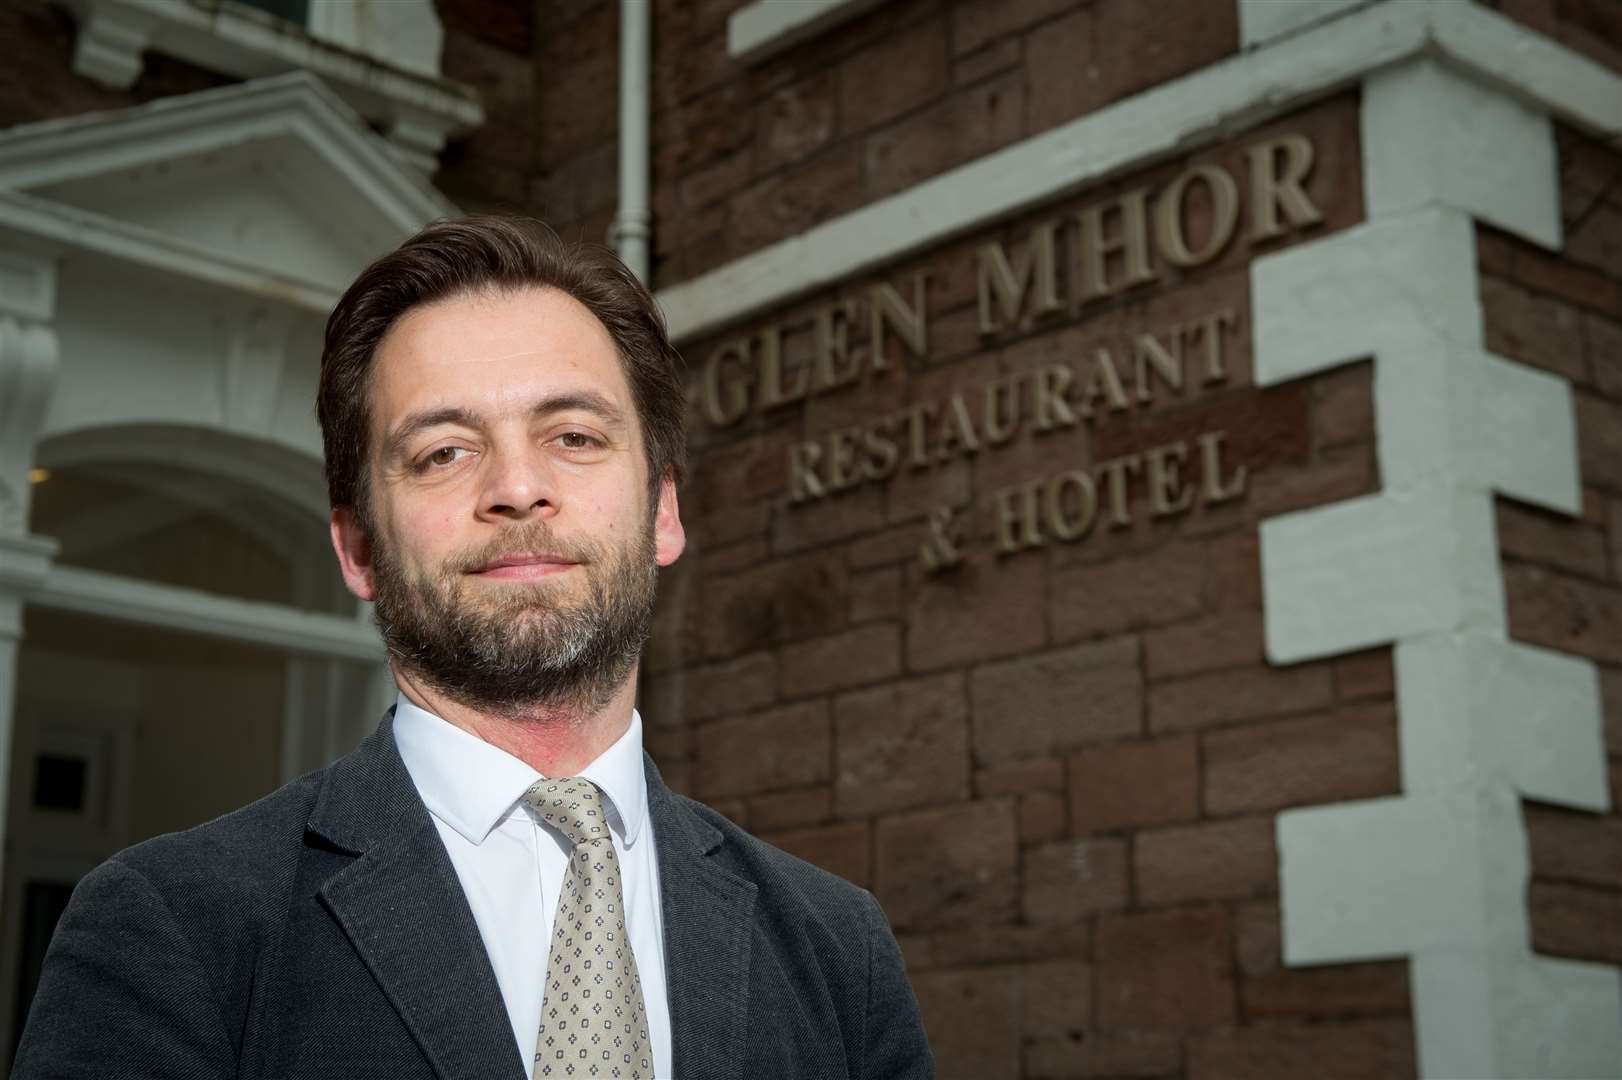 Emmanuel Moine, manager of the Glen Mhor Hotel.